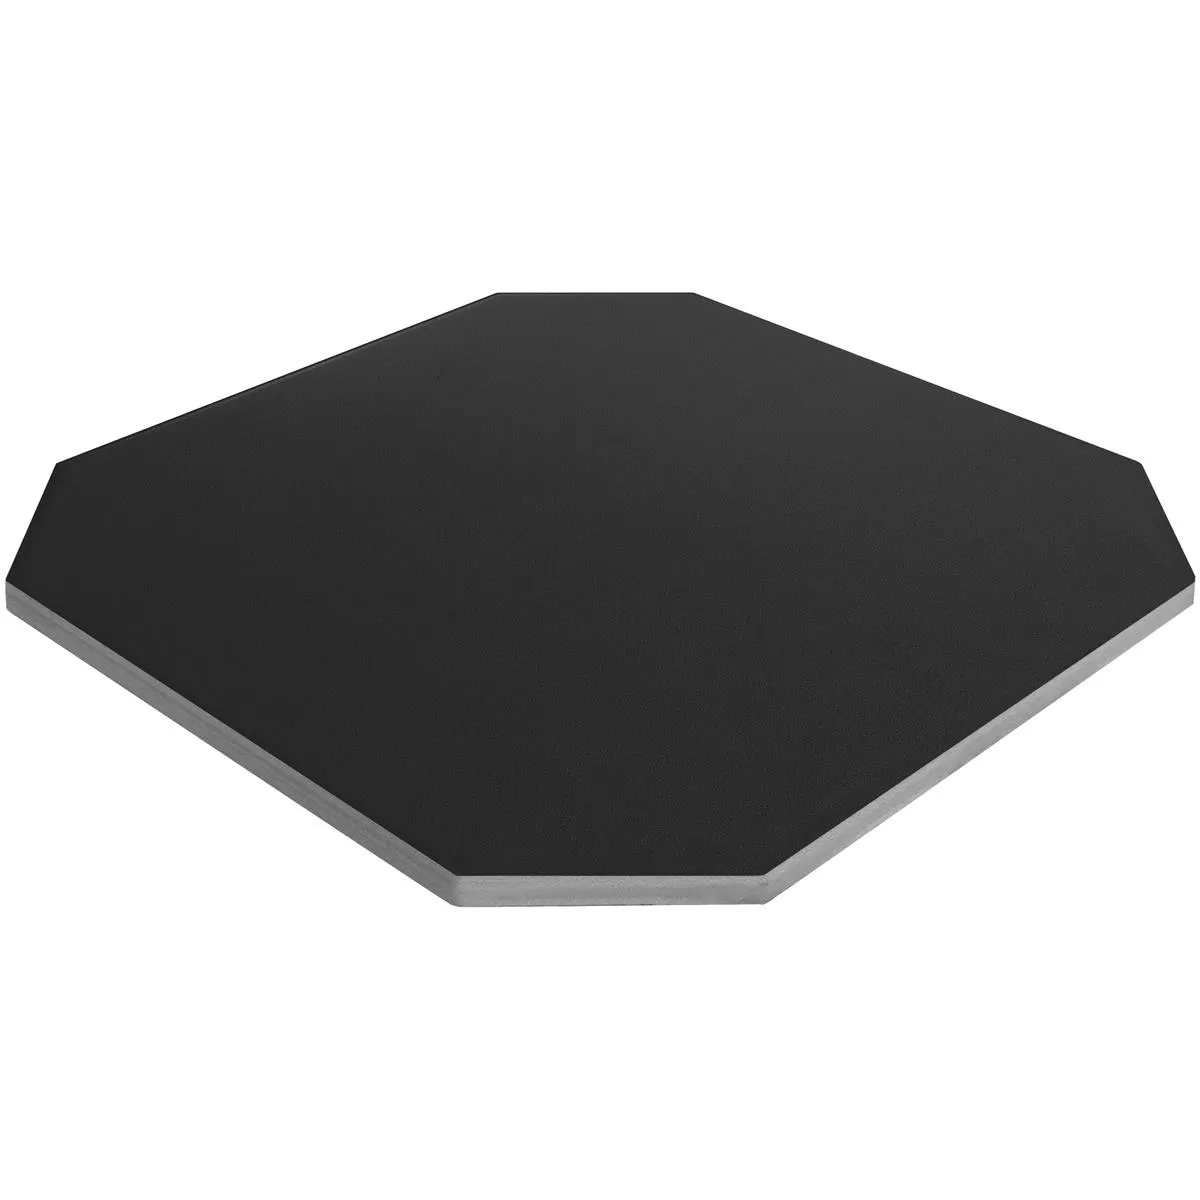 Porcelain Stoneware Tiles Genexia Uni Black Octagon 20x20cm